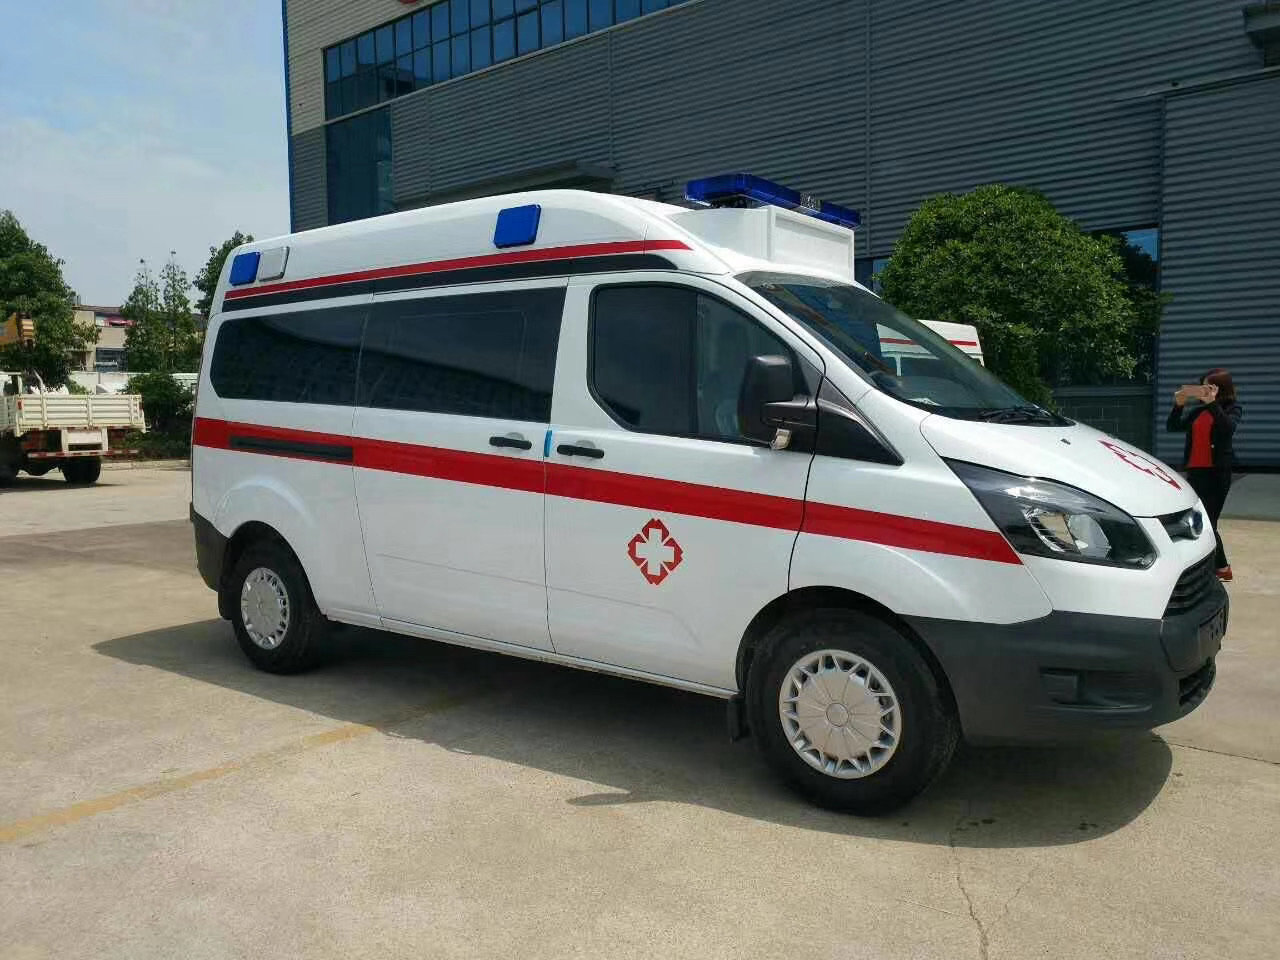 福贡县出院转院救护车